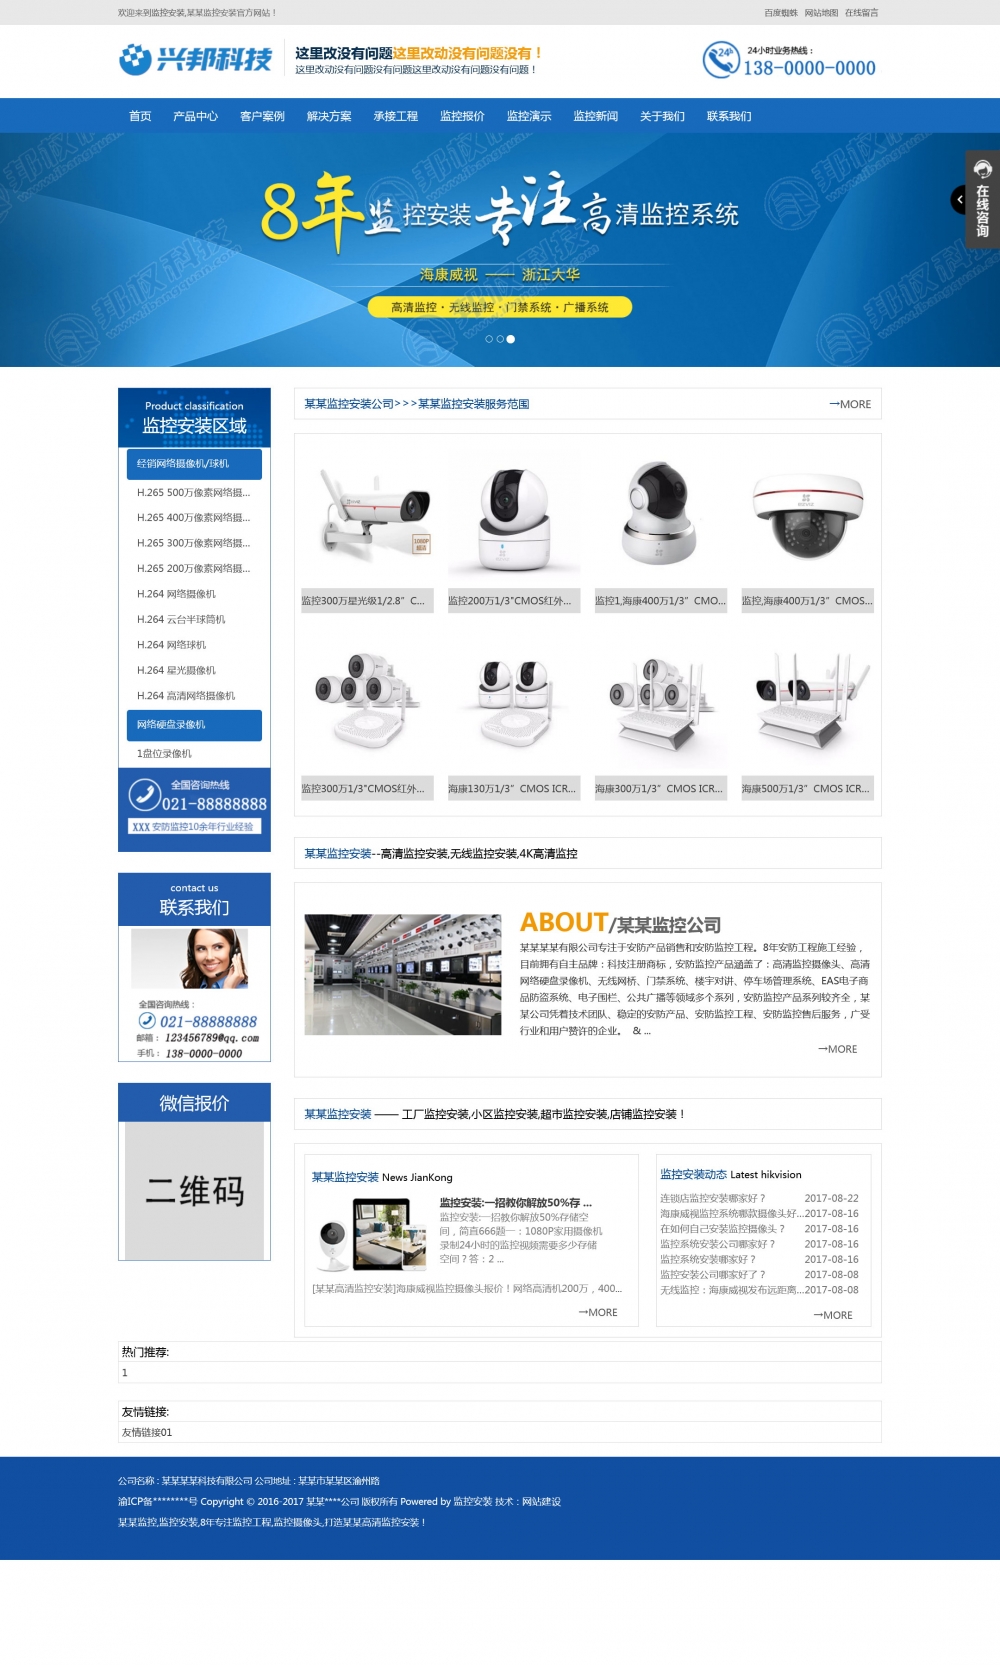 远程监控摄像监控摄像头监控设备网站建设营销型企业网站